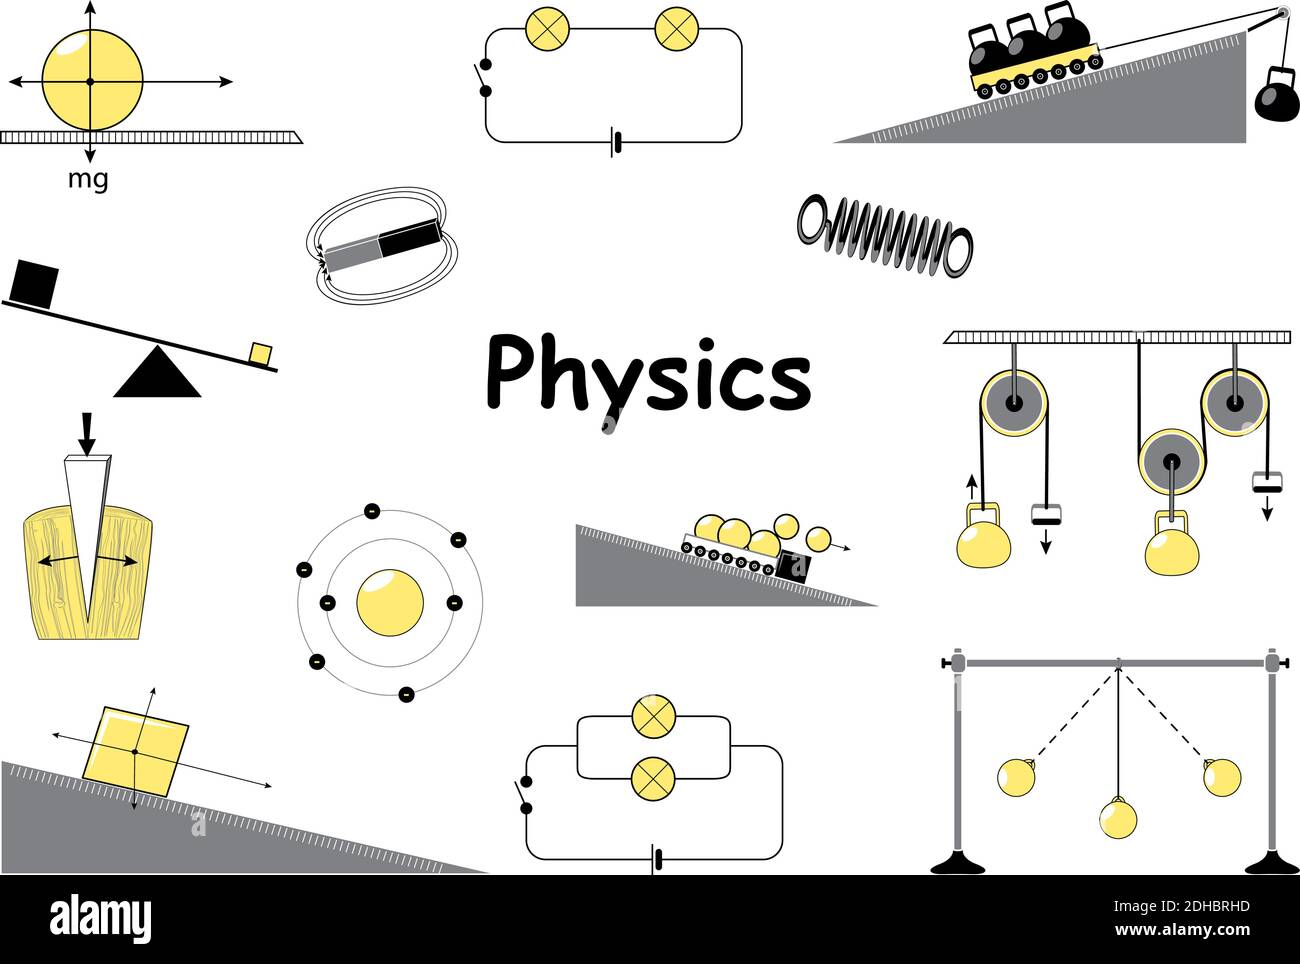 Symbole für Physik und Wissenschaft eingestellt. Klassische Mechanik.  Experimente Ausrüstung, Werkzeuge, Magnet, Atom, Pendel, Newtons Gesetze  und die einfachsten Mechanismen Stock-Vektorgrafik - Alamy